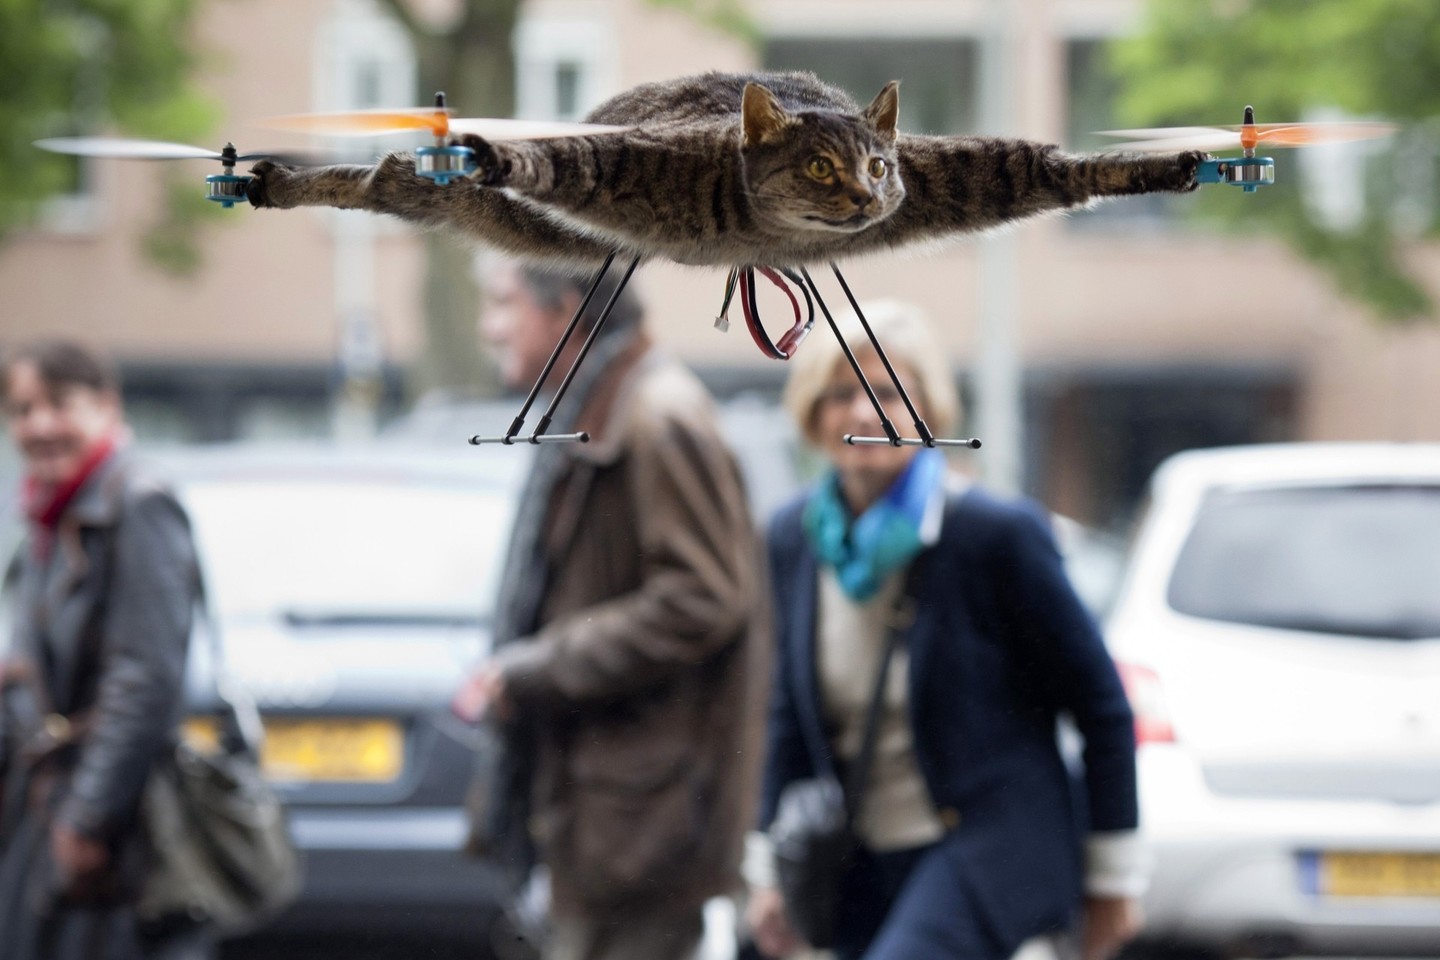 B.Janseną pasaulyje išgarsino jo „skraidanti katė“.<br>Reuters/Scanpix nuotr.